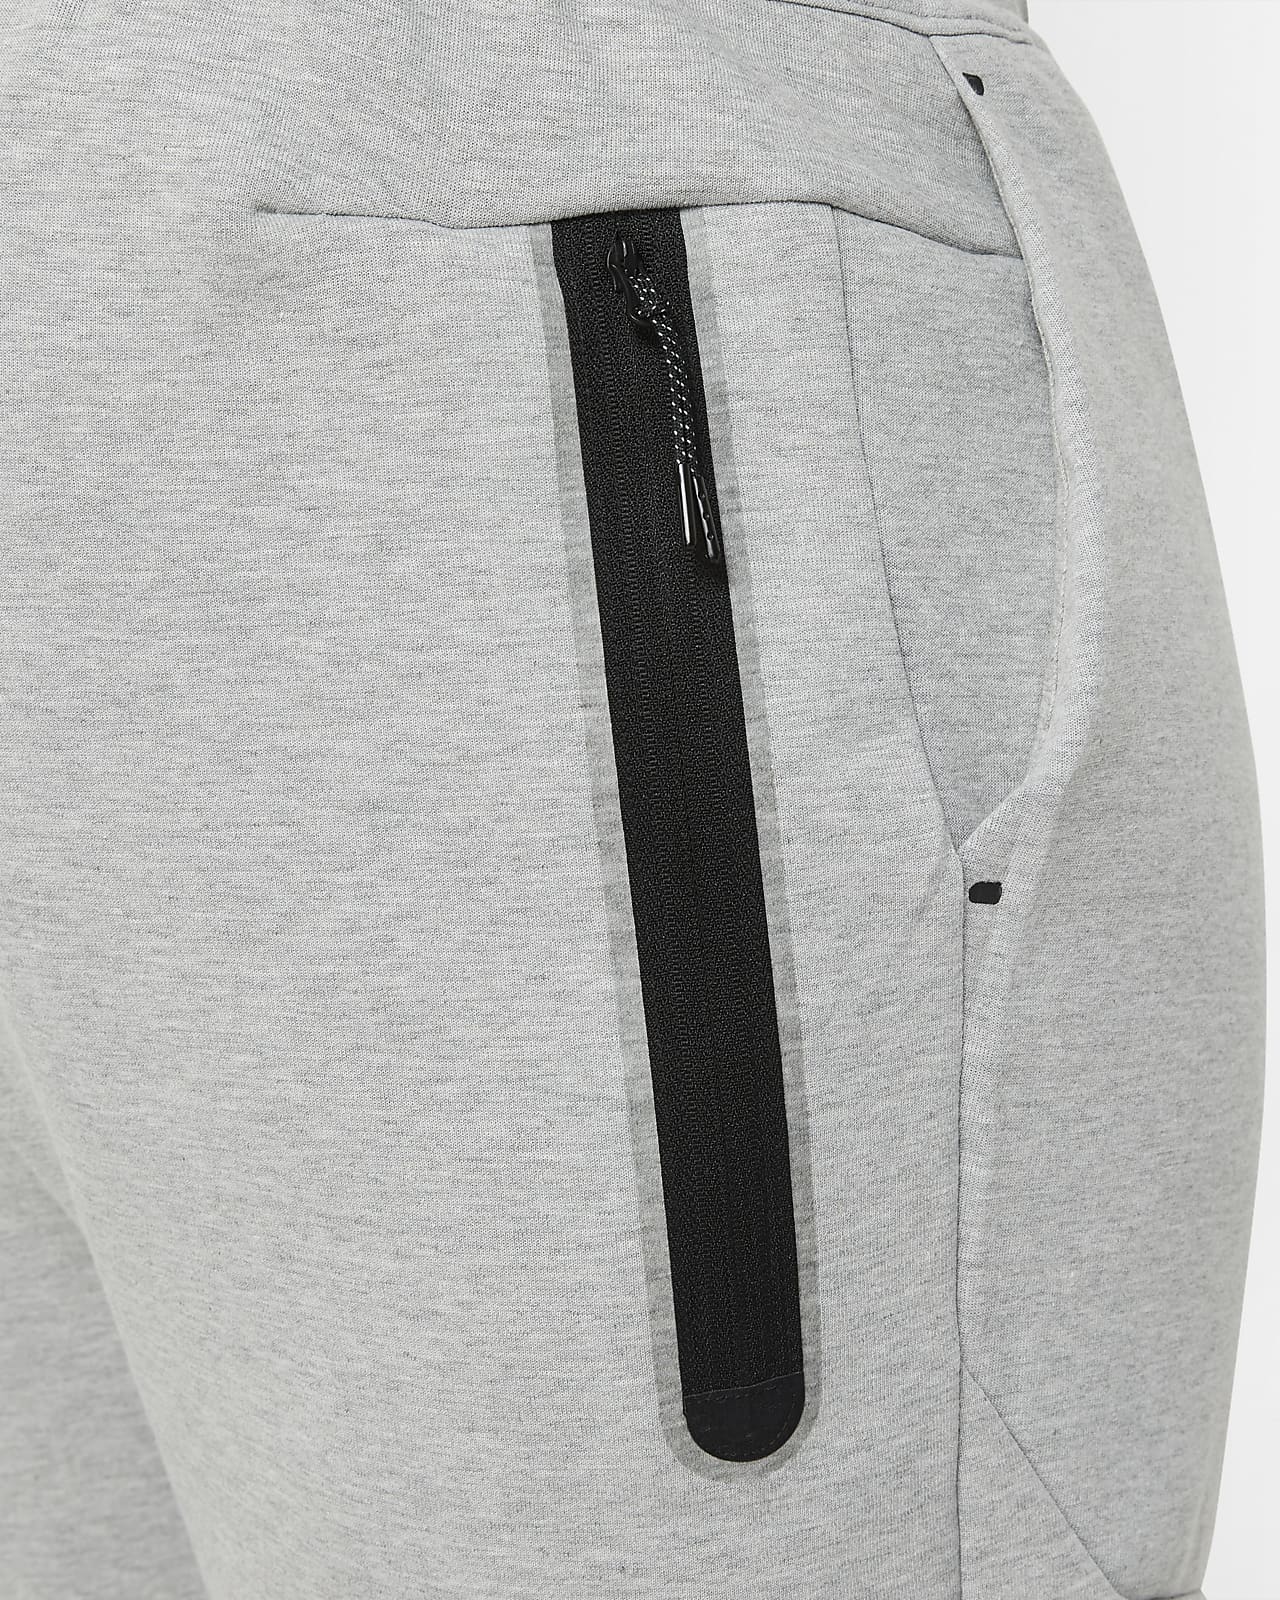 grey and black nike tech fleece